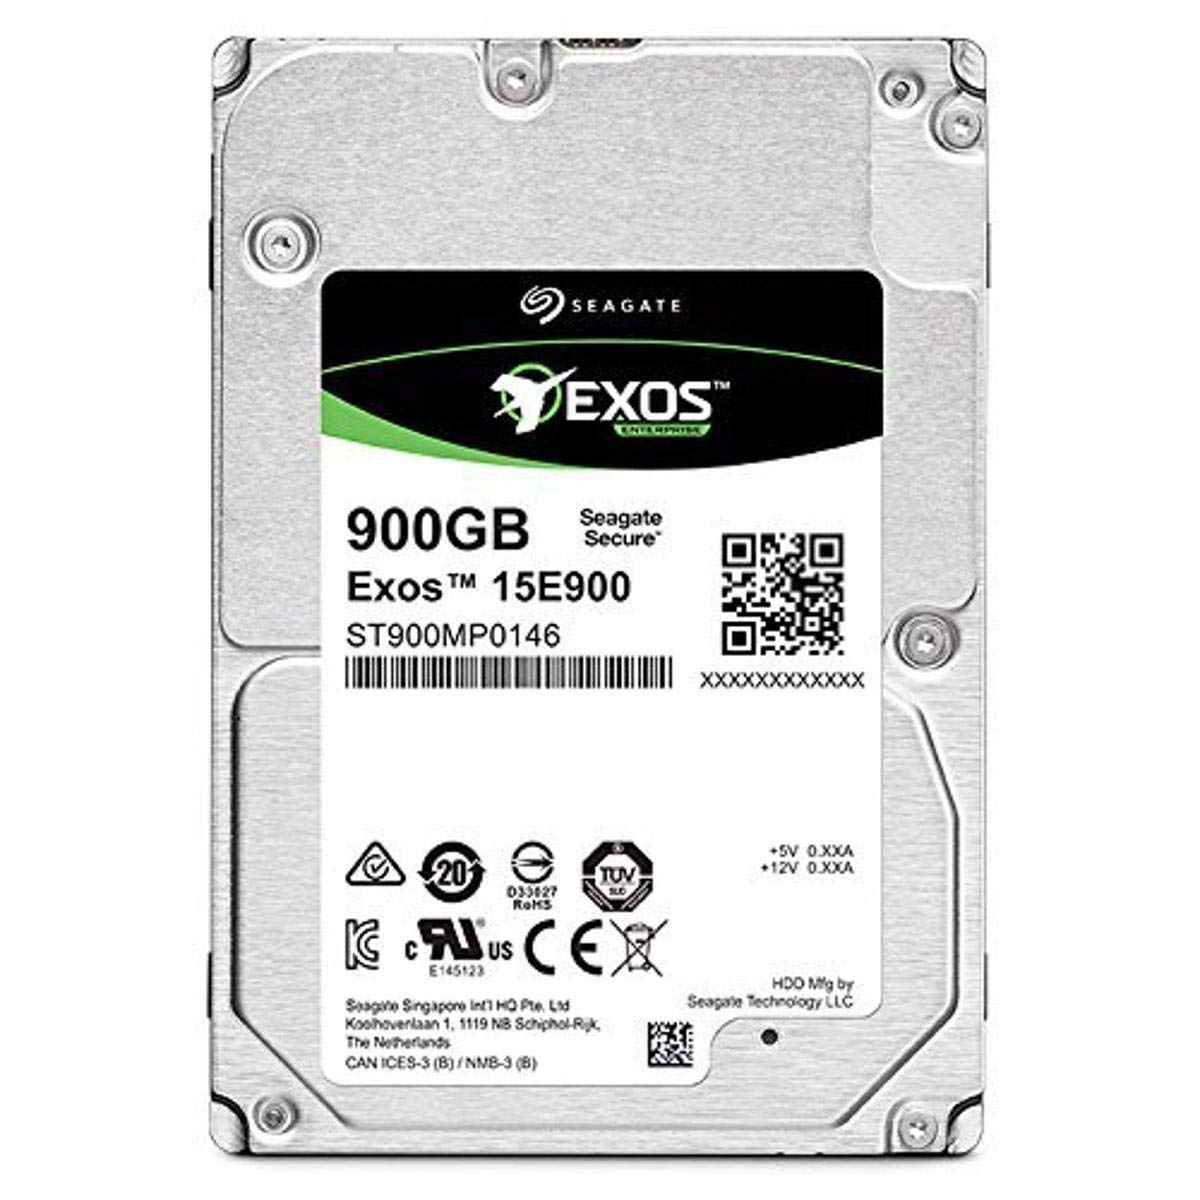 EXOS 15E900 900GB